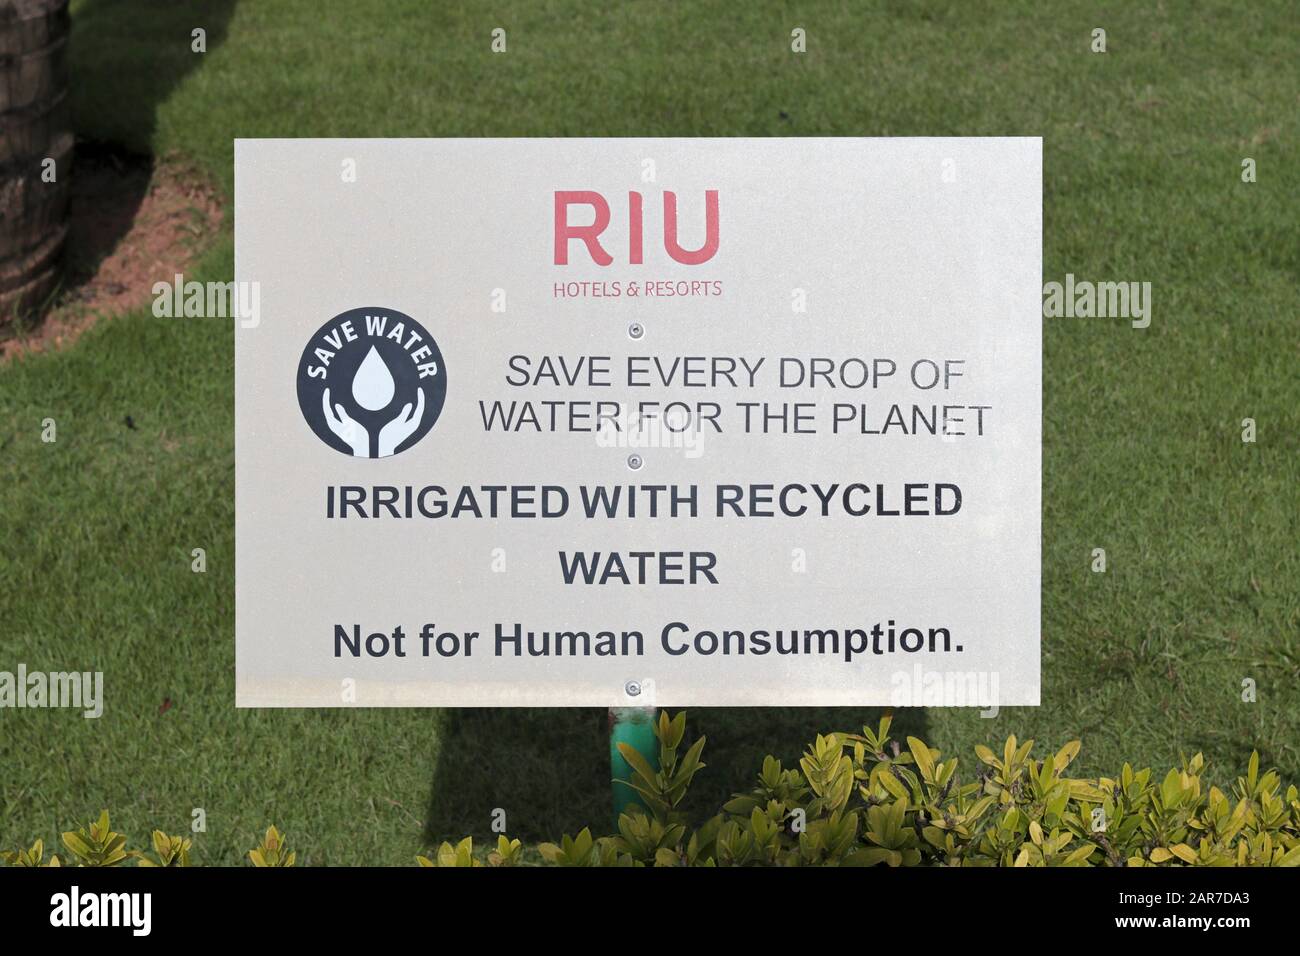 Ein Schild auf dem Gelände eines RIU Hotels, das sagt: "Wasser sparen". Sparen Sie Jeden Tropfen Wasser für den Planeten. Bewässert mit recyceltem Wasser. Nicht für menschliches Consum Stockfoto